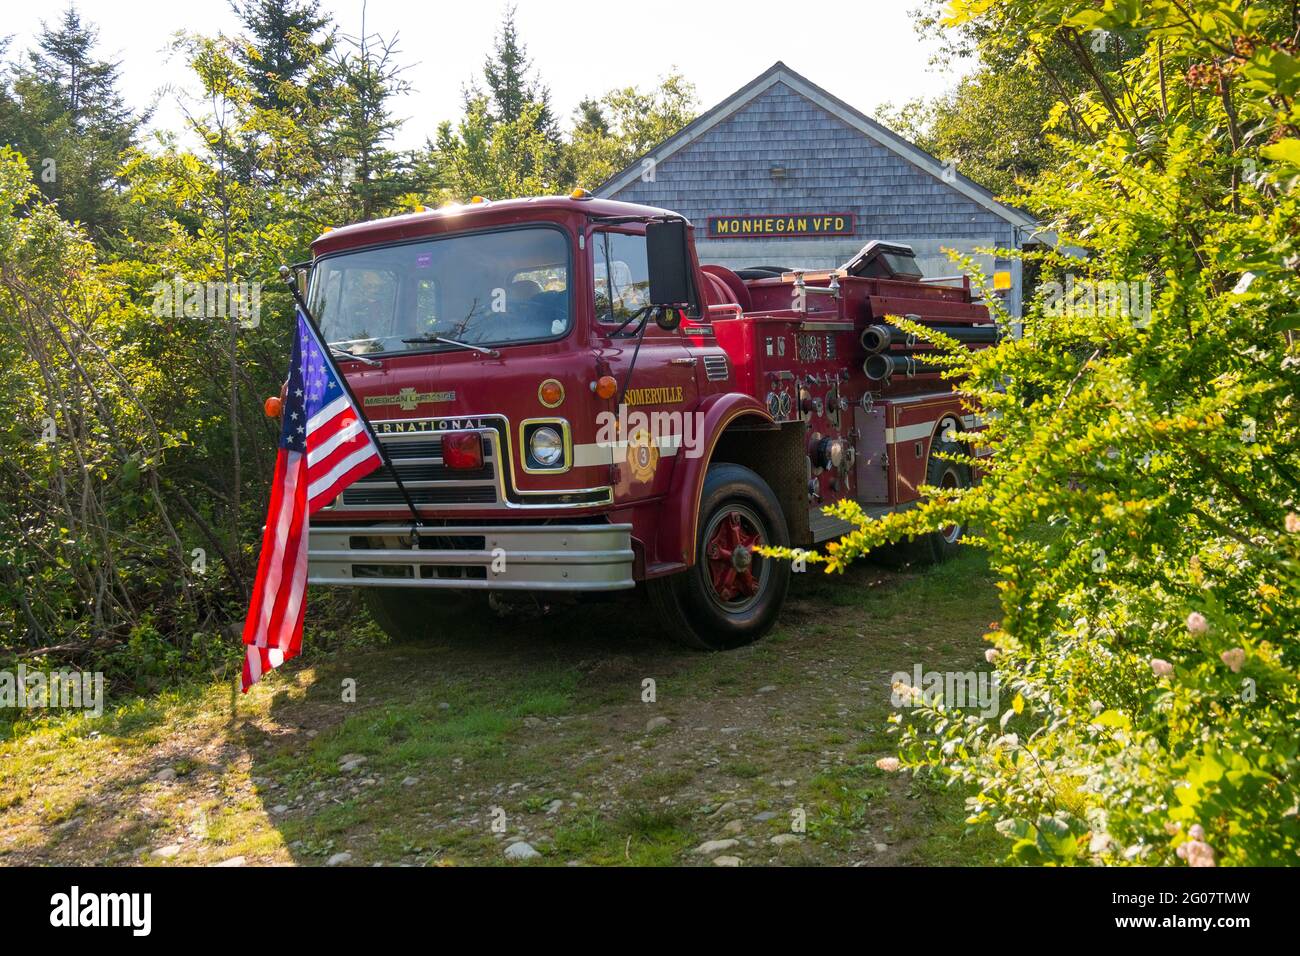 Un camion d'incendie rouge Somerville avec un drapeau américain est stationné devant le VFD, service d'incendie volontaire. Sur l'île Monhegan dans le Maine. Banque D'Images